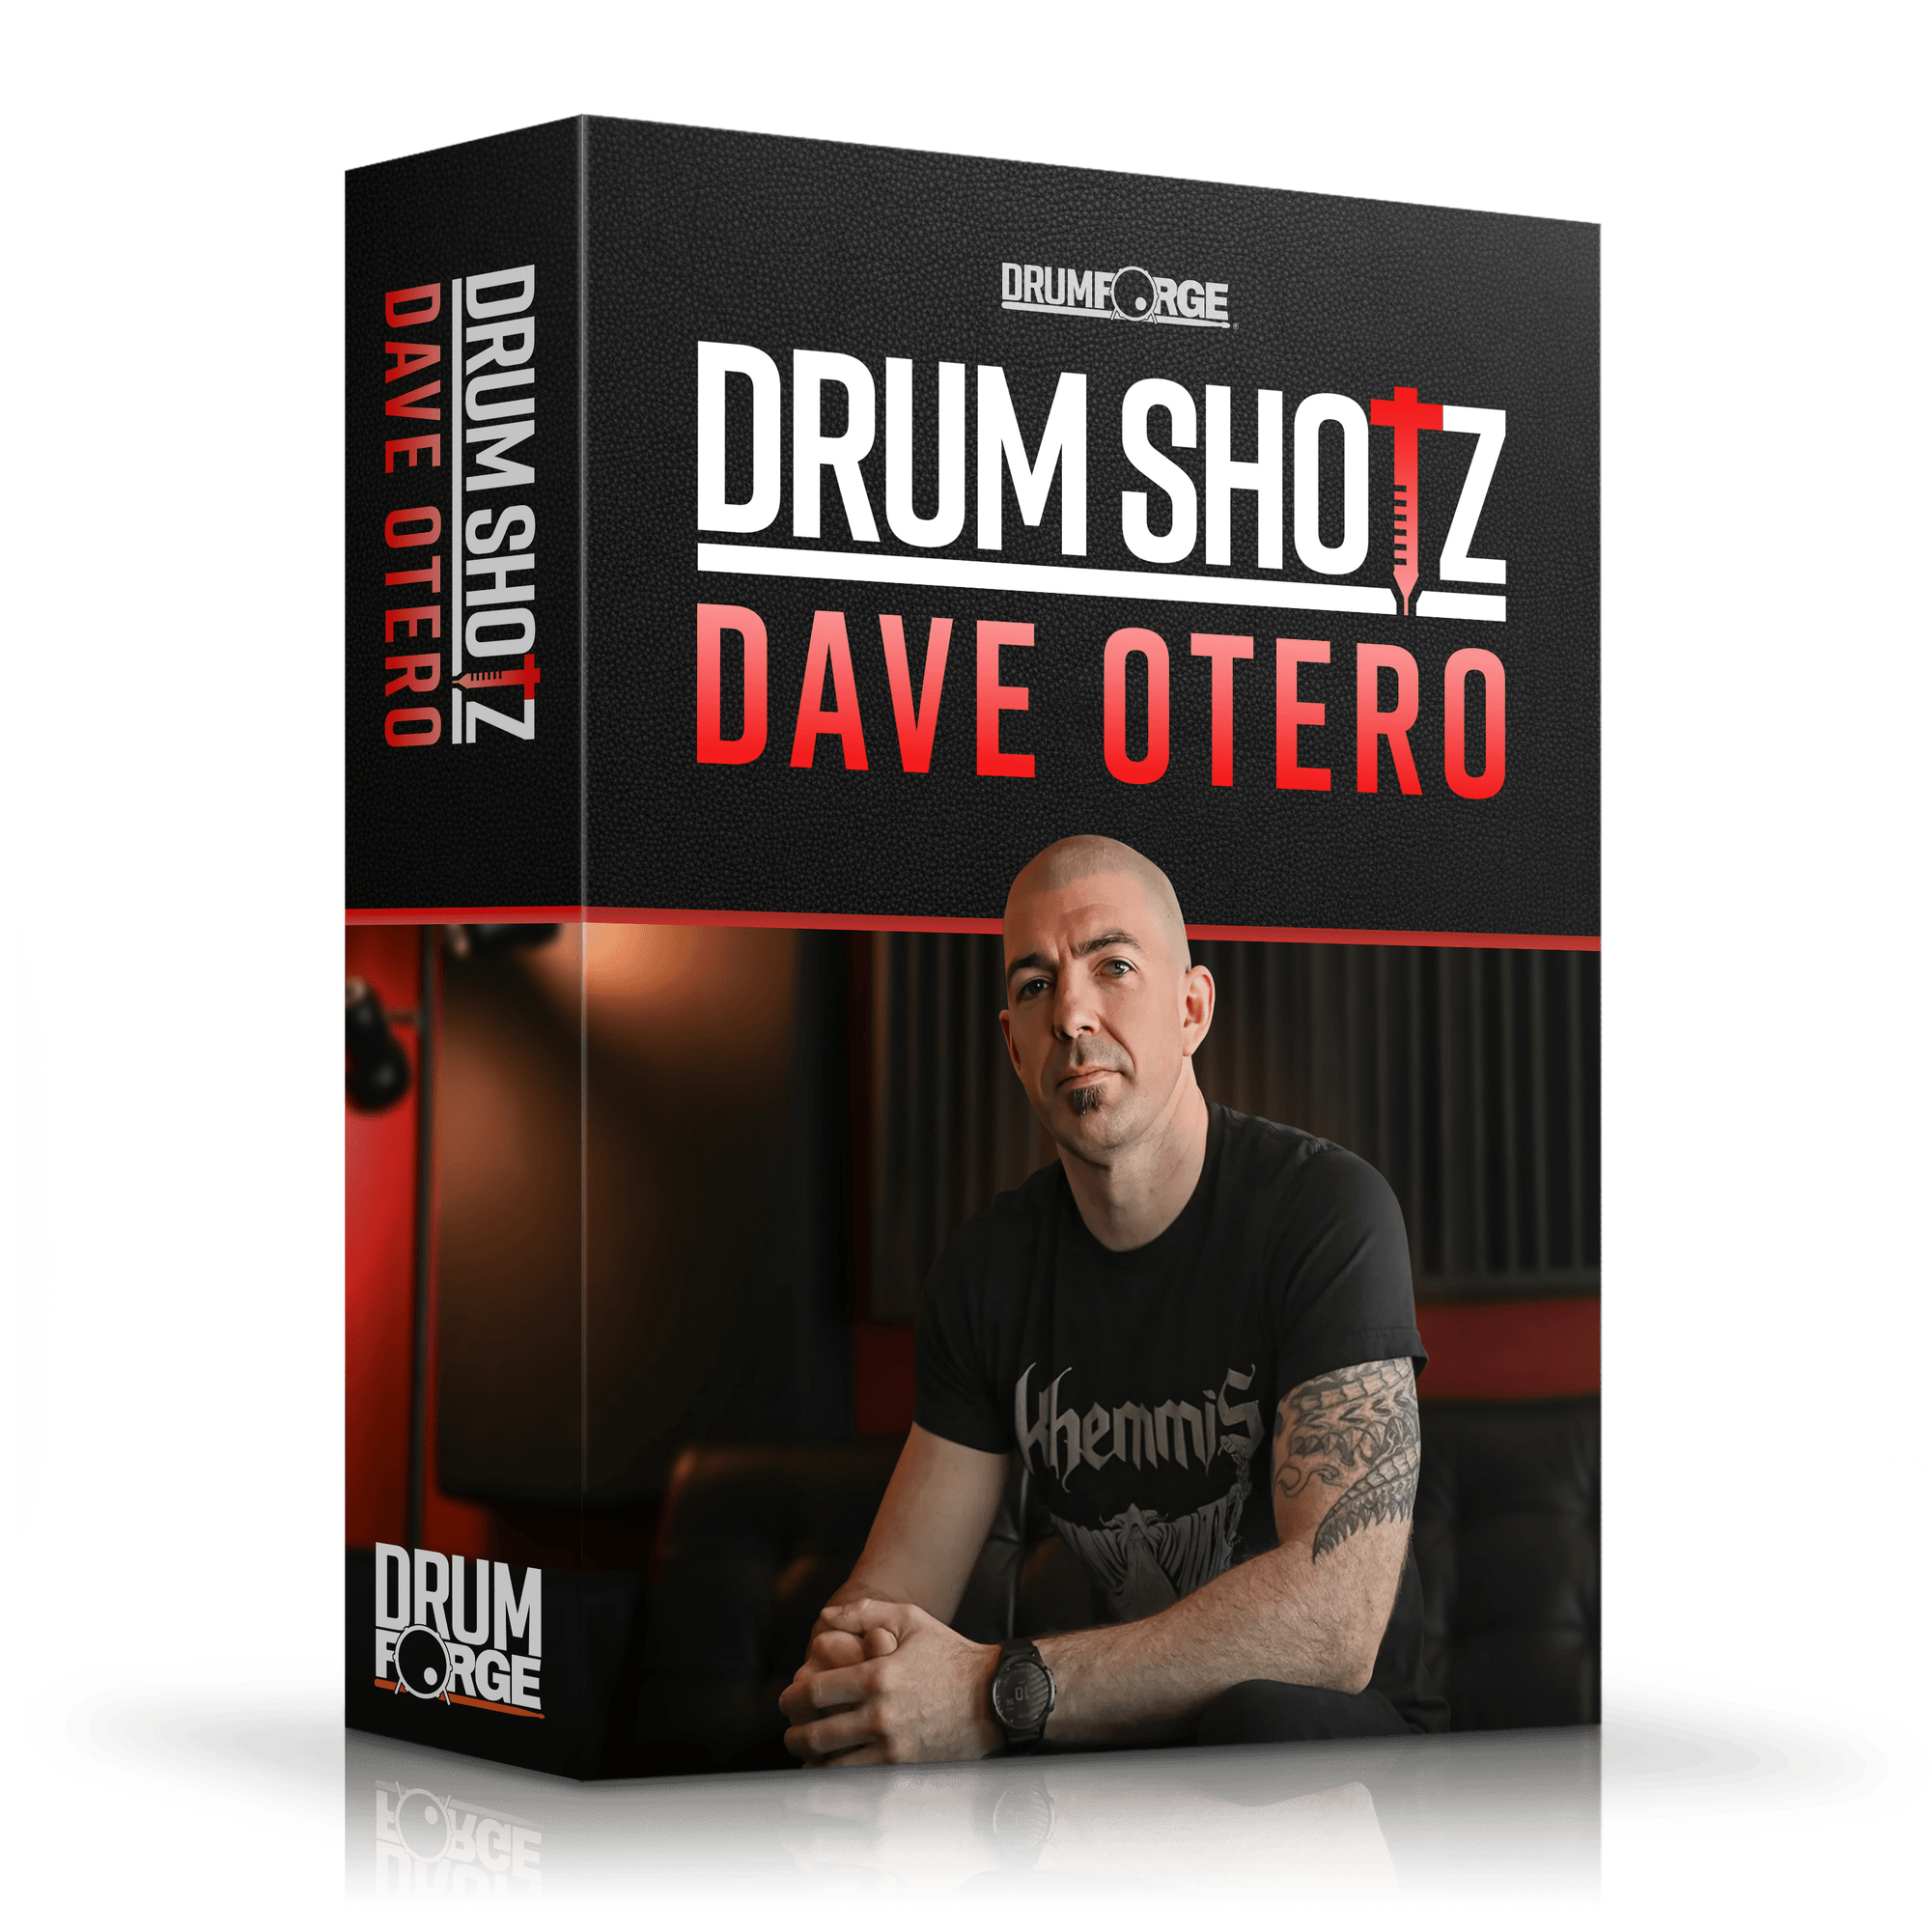 Drumshotz Dave Otero